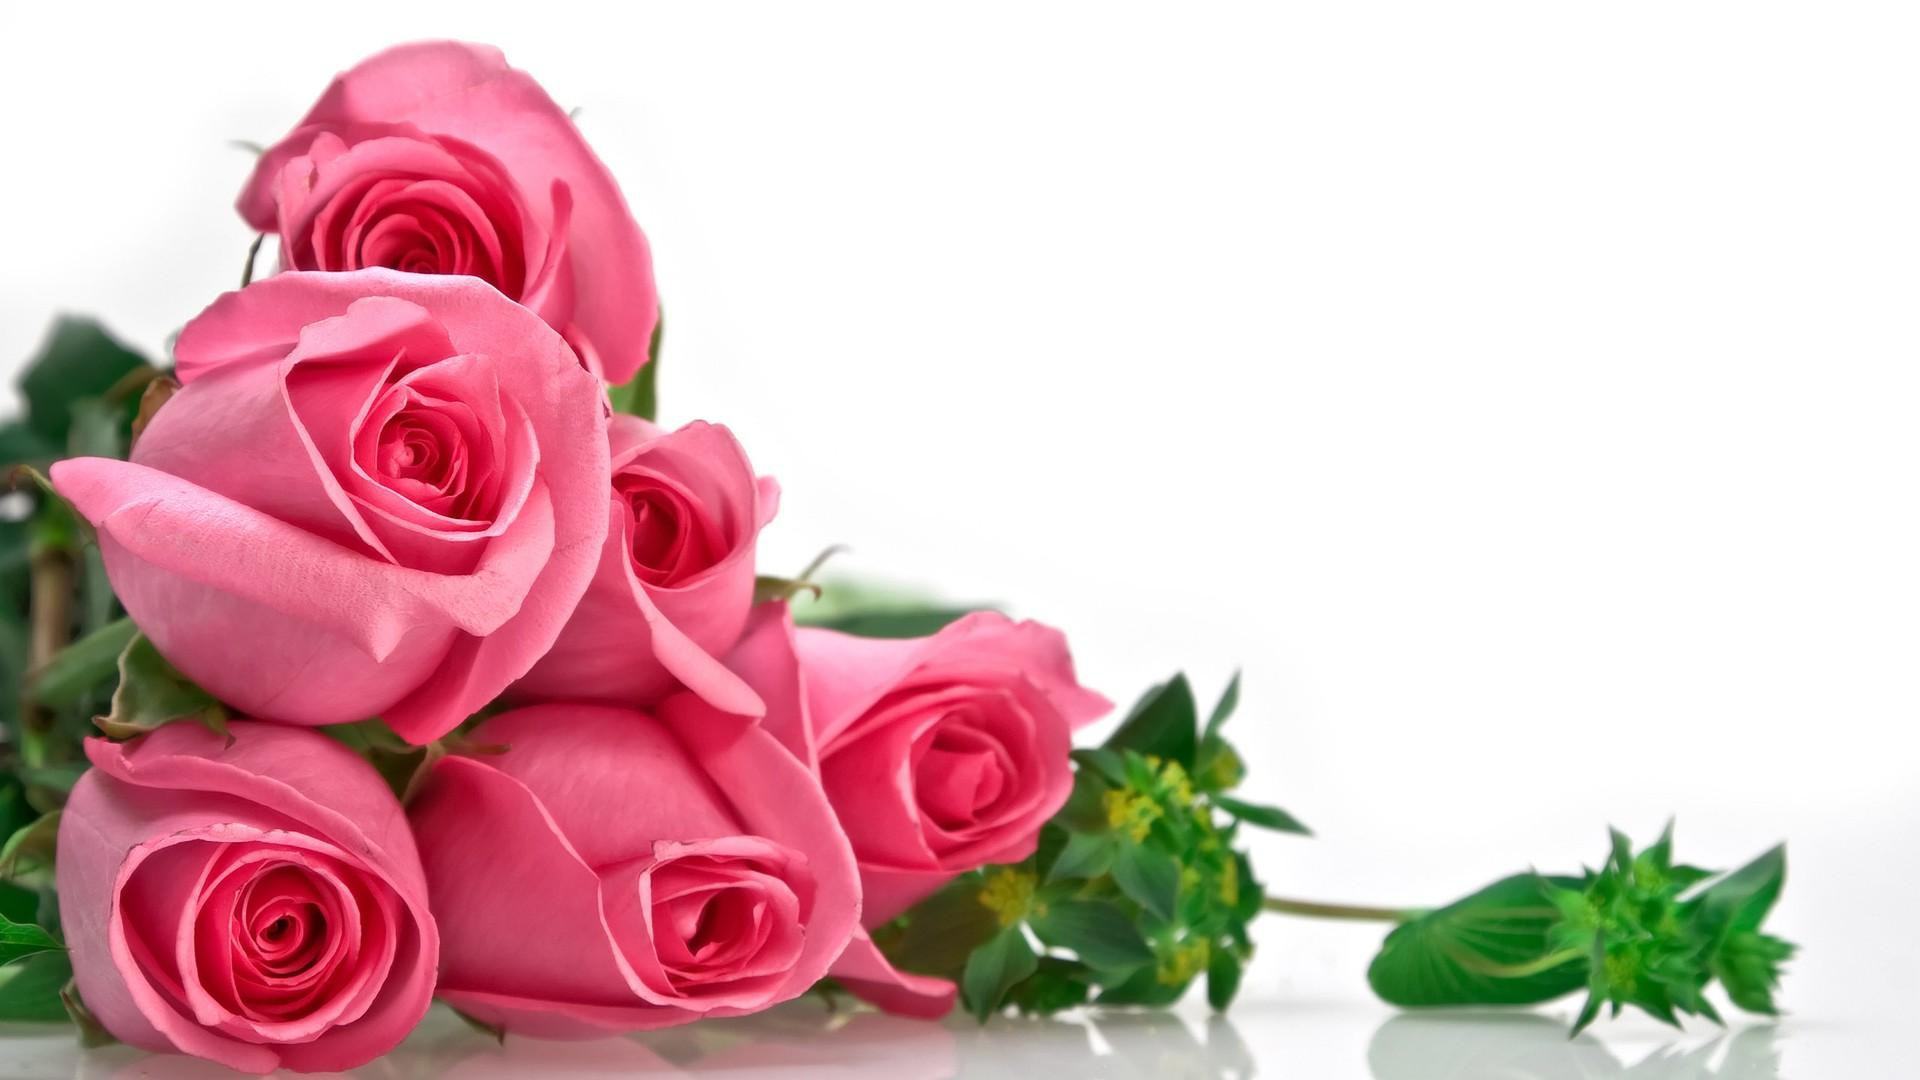 Ý nghĩa hoa hồng đẹp đã được truyền tụng qua nhiều thế hệ. Hãy cùng chiêm ngưỡng một số hình ảnh để hiểu rõ hơn về ý nghĩa tuyệt vời của loài hoa này.